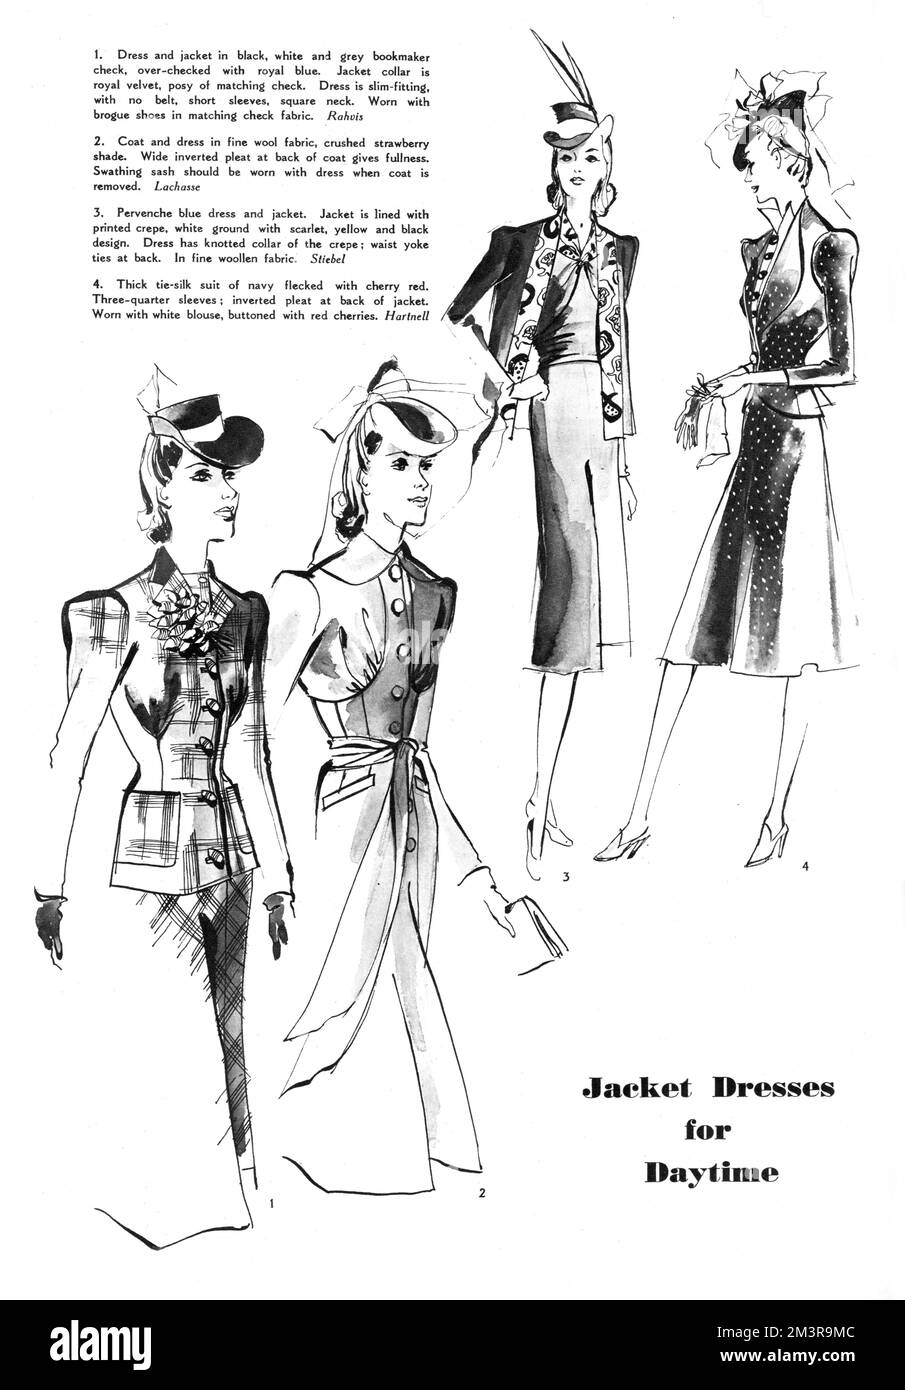 Moderedaktion für den kommenden Frühling, verziert mit vier Zeichnungen von Frauen, die von berühmten Designern entworfene Jackenkleider tragen. Zu den reproduzierten Gegenständen gehören ein eng anliegendes Kleid und eine königliche Samtjacke von Rahvis, ein Mantel und Kleid aus feinem Wollgewebe von Lachasse, ein wollblaues Kleid und eine Jacke von Victor Stiebel und ein dicker Seidenanzug von Norman Hartnell. Datum: 1940 Stockfoto